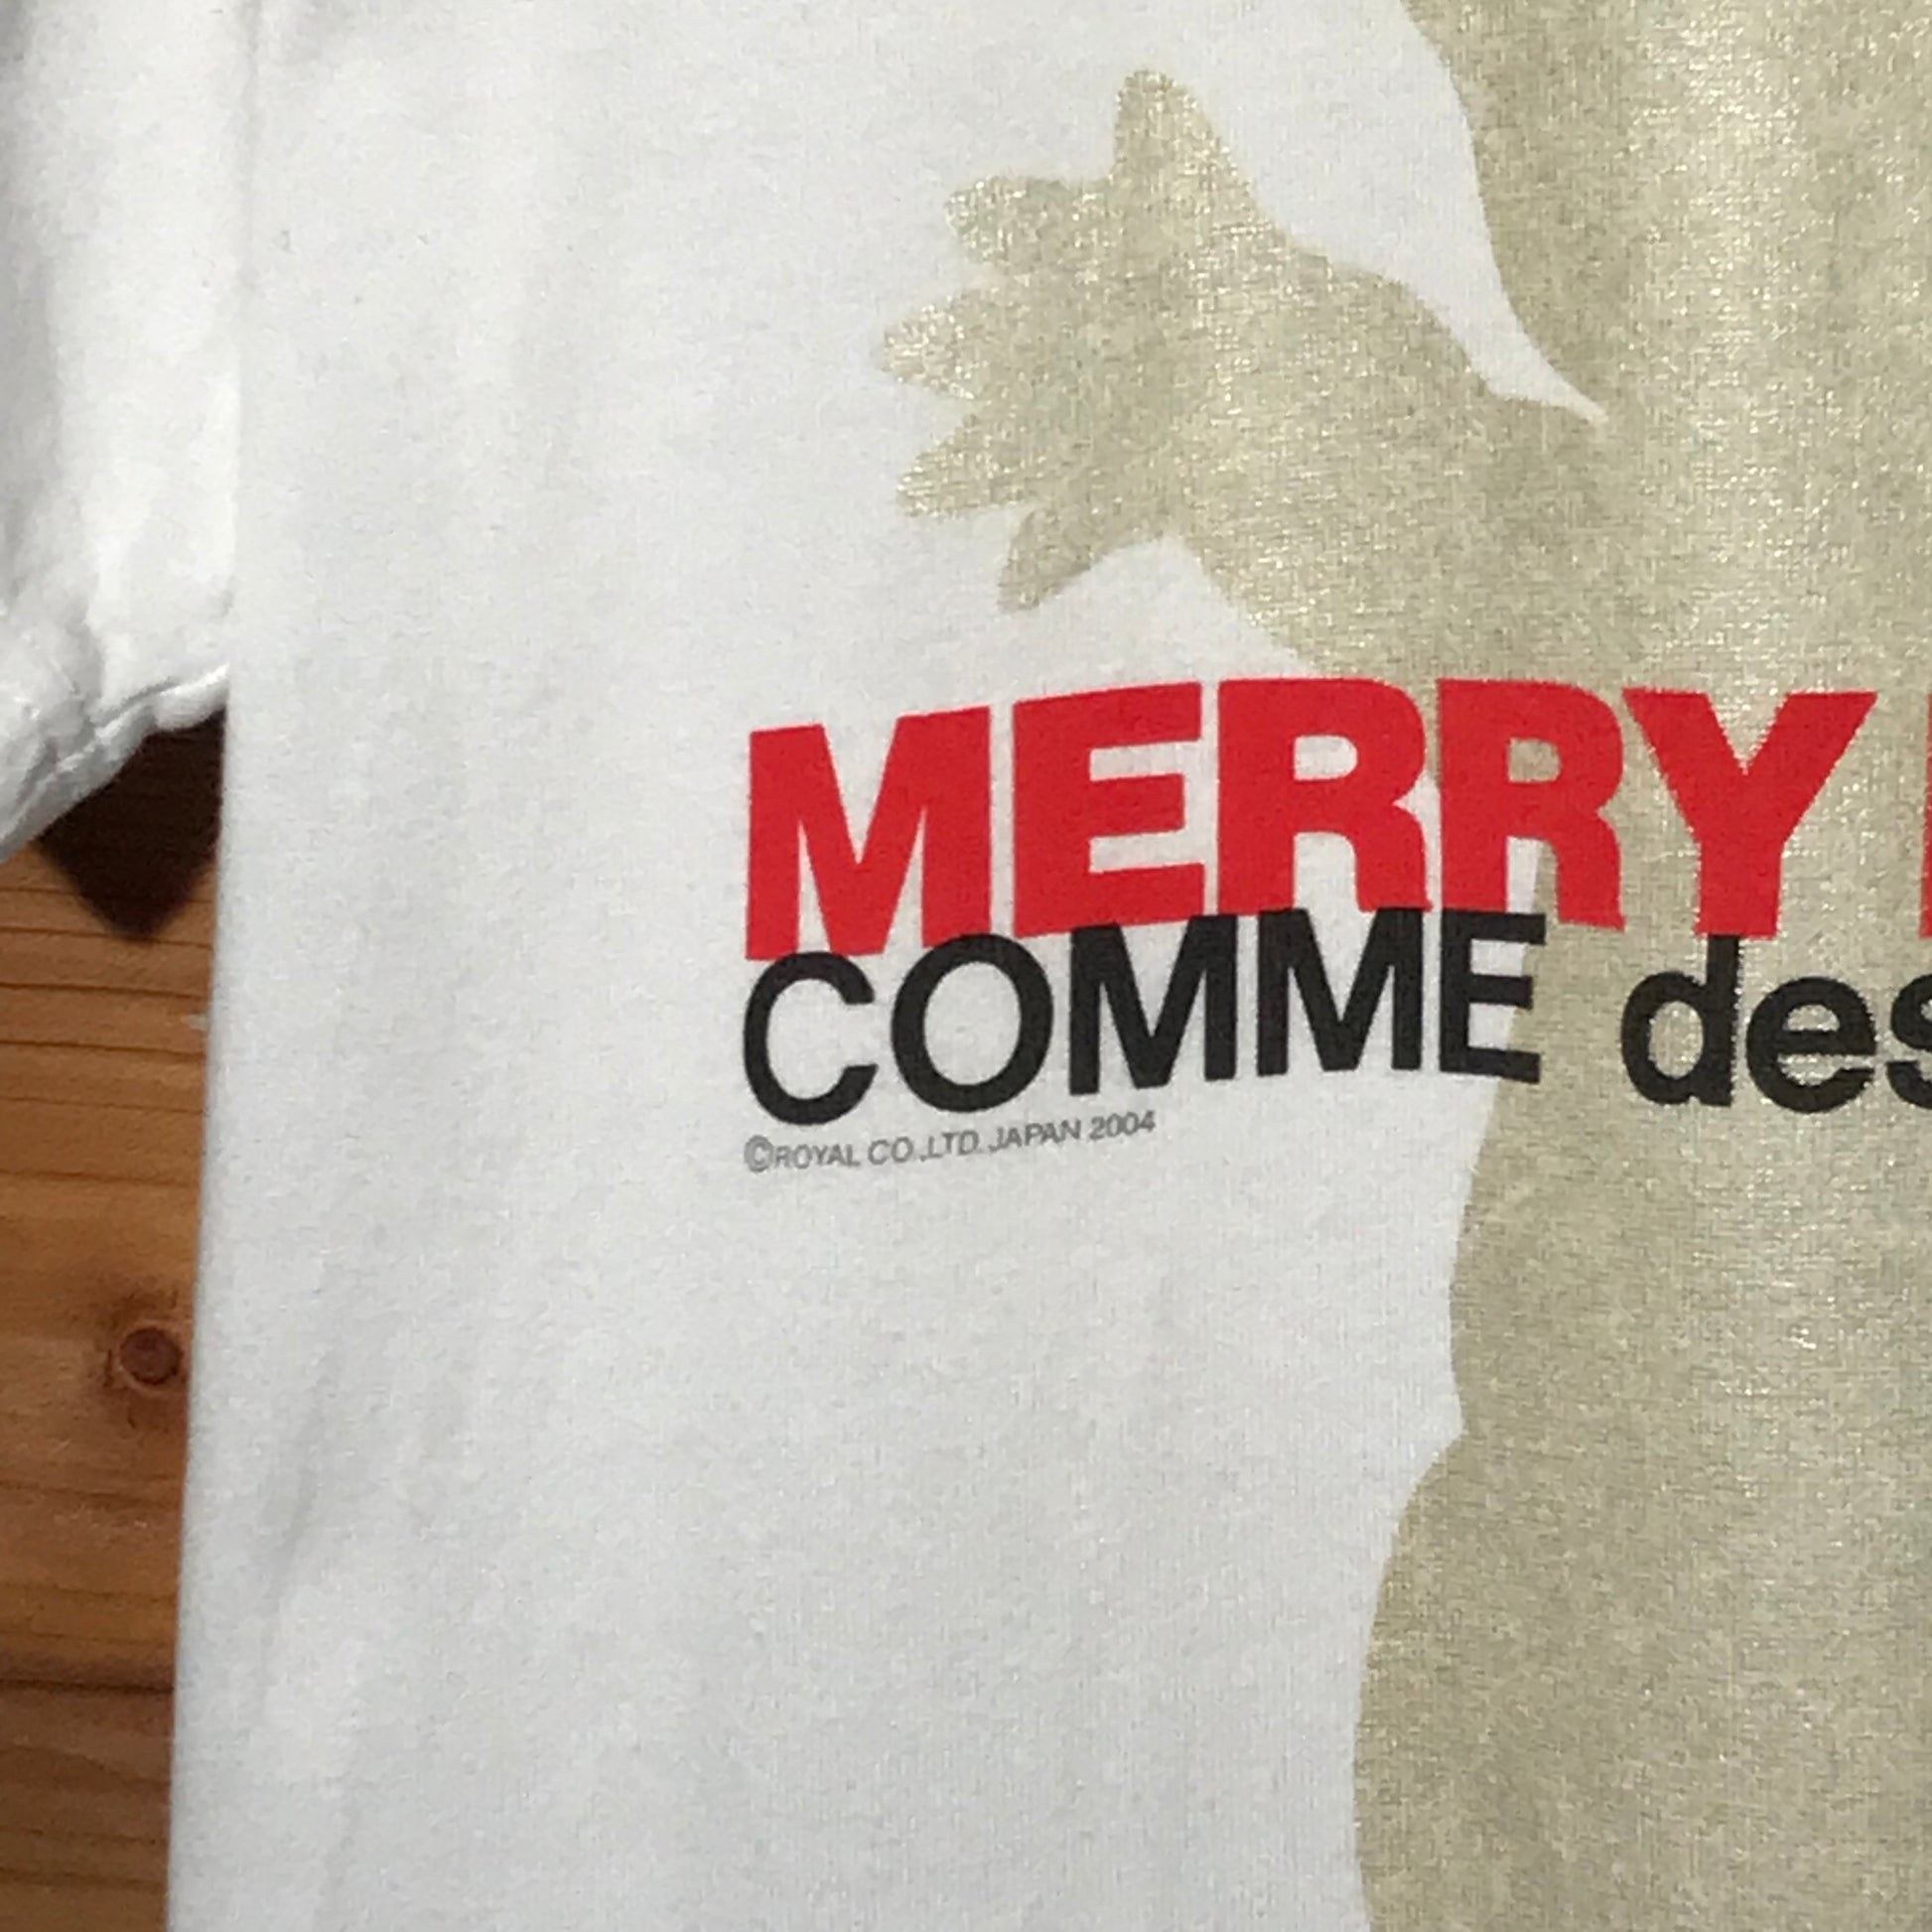 2004 Comme Des Garçons Merry Lovers t shirt – HeresWear